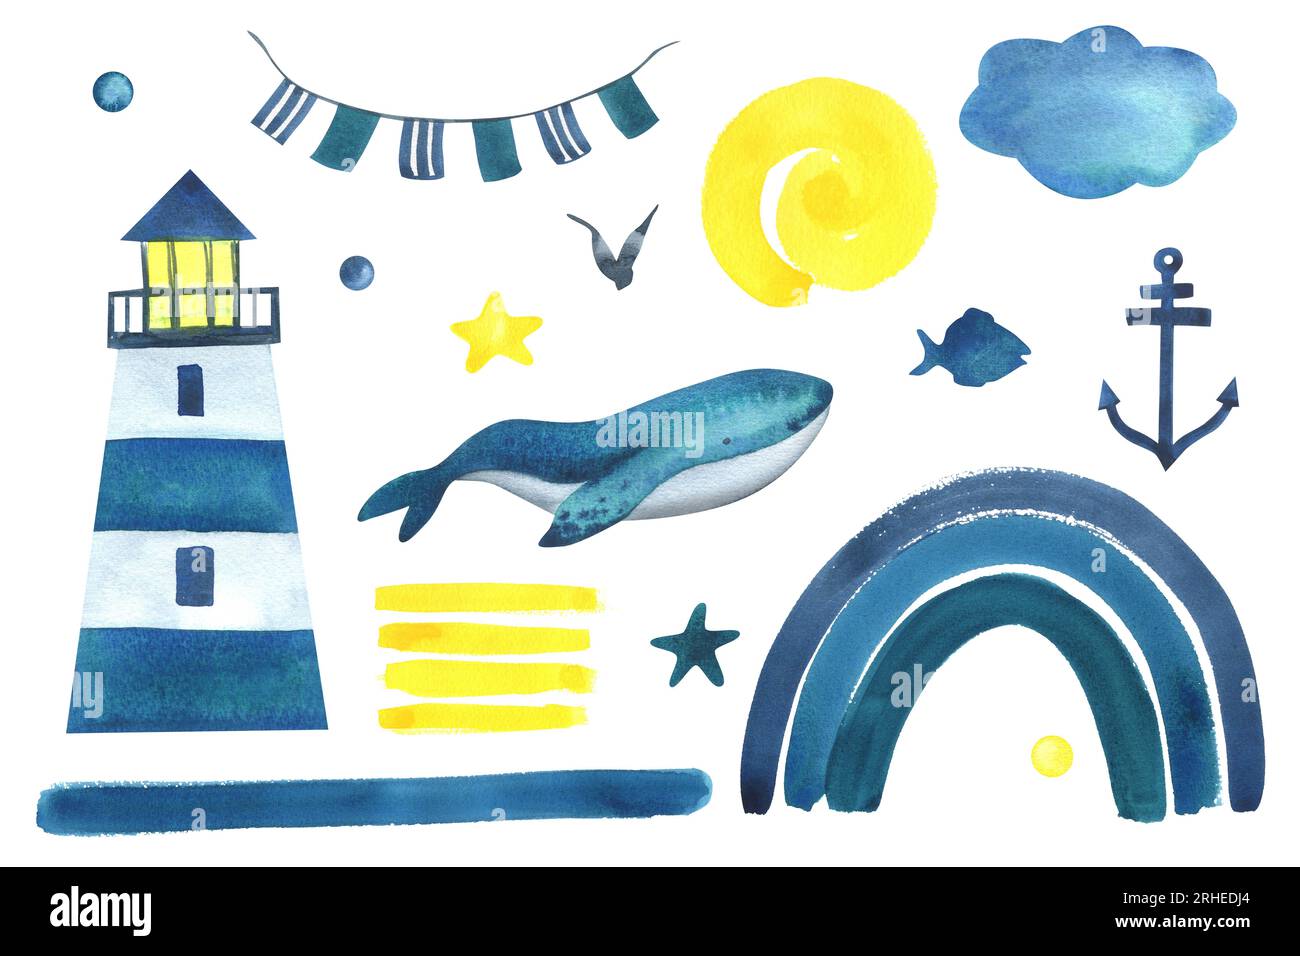 Ensemble nautique avec phare, baleine, arc-en-ciel et soleil dans les couleurs bleu, turquoise, jaune. Illustration aquarelle dessinée à la main dans le style des enfants Banque D'Images